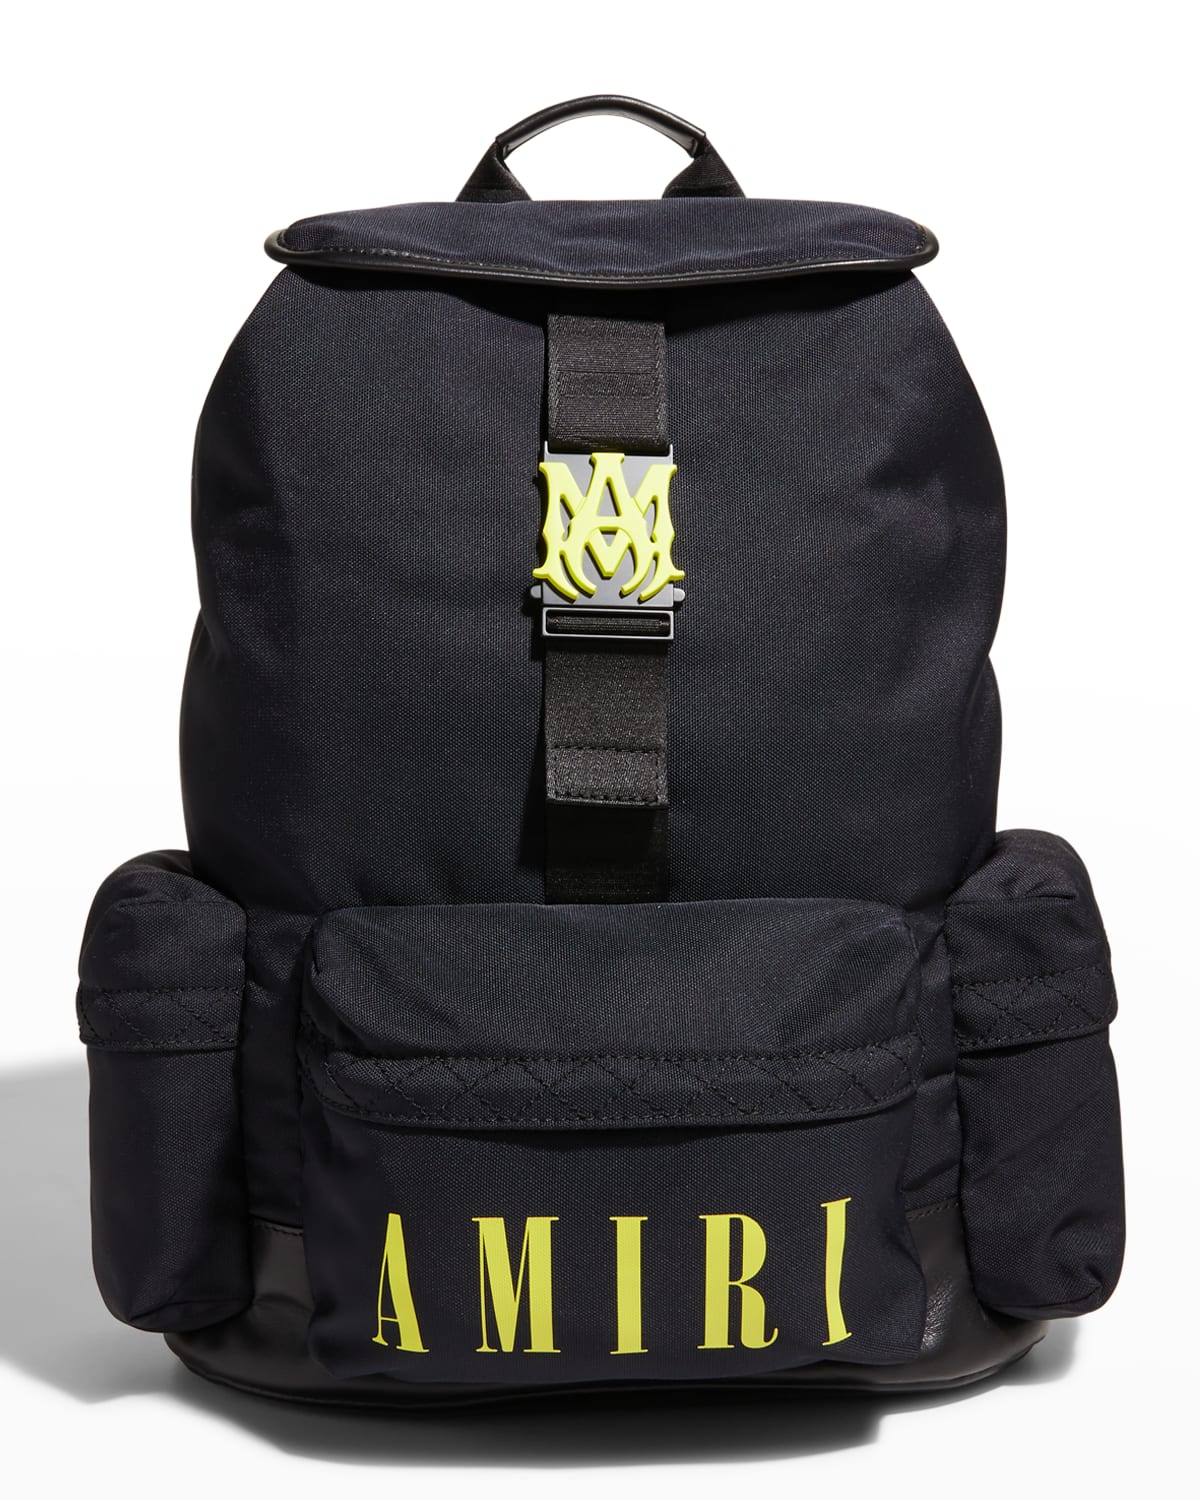 AMIRI Bags for Men | ModeSens